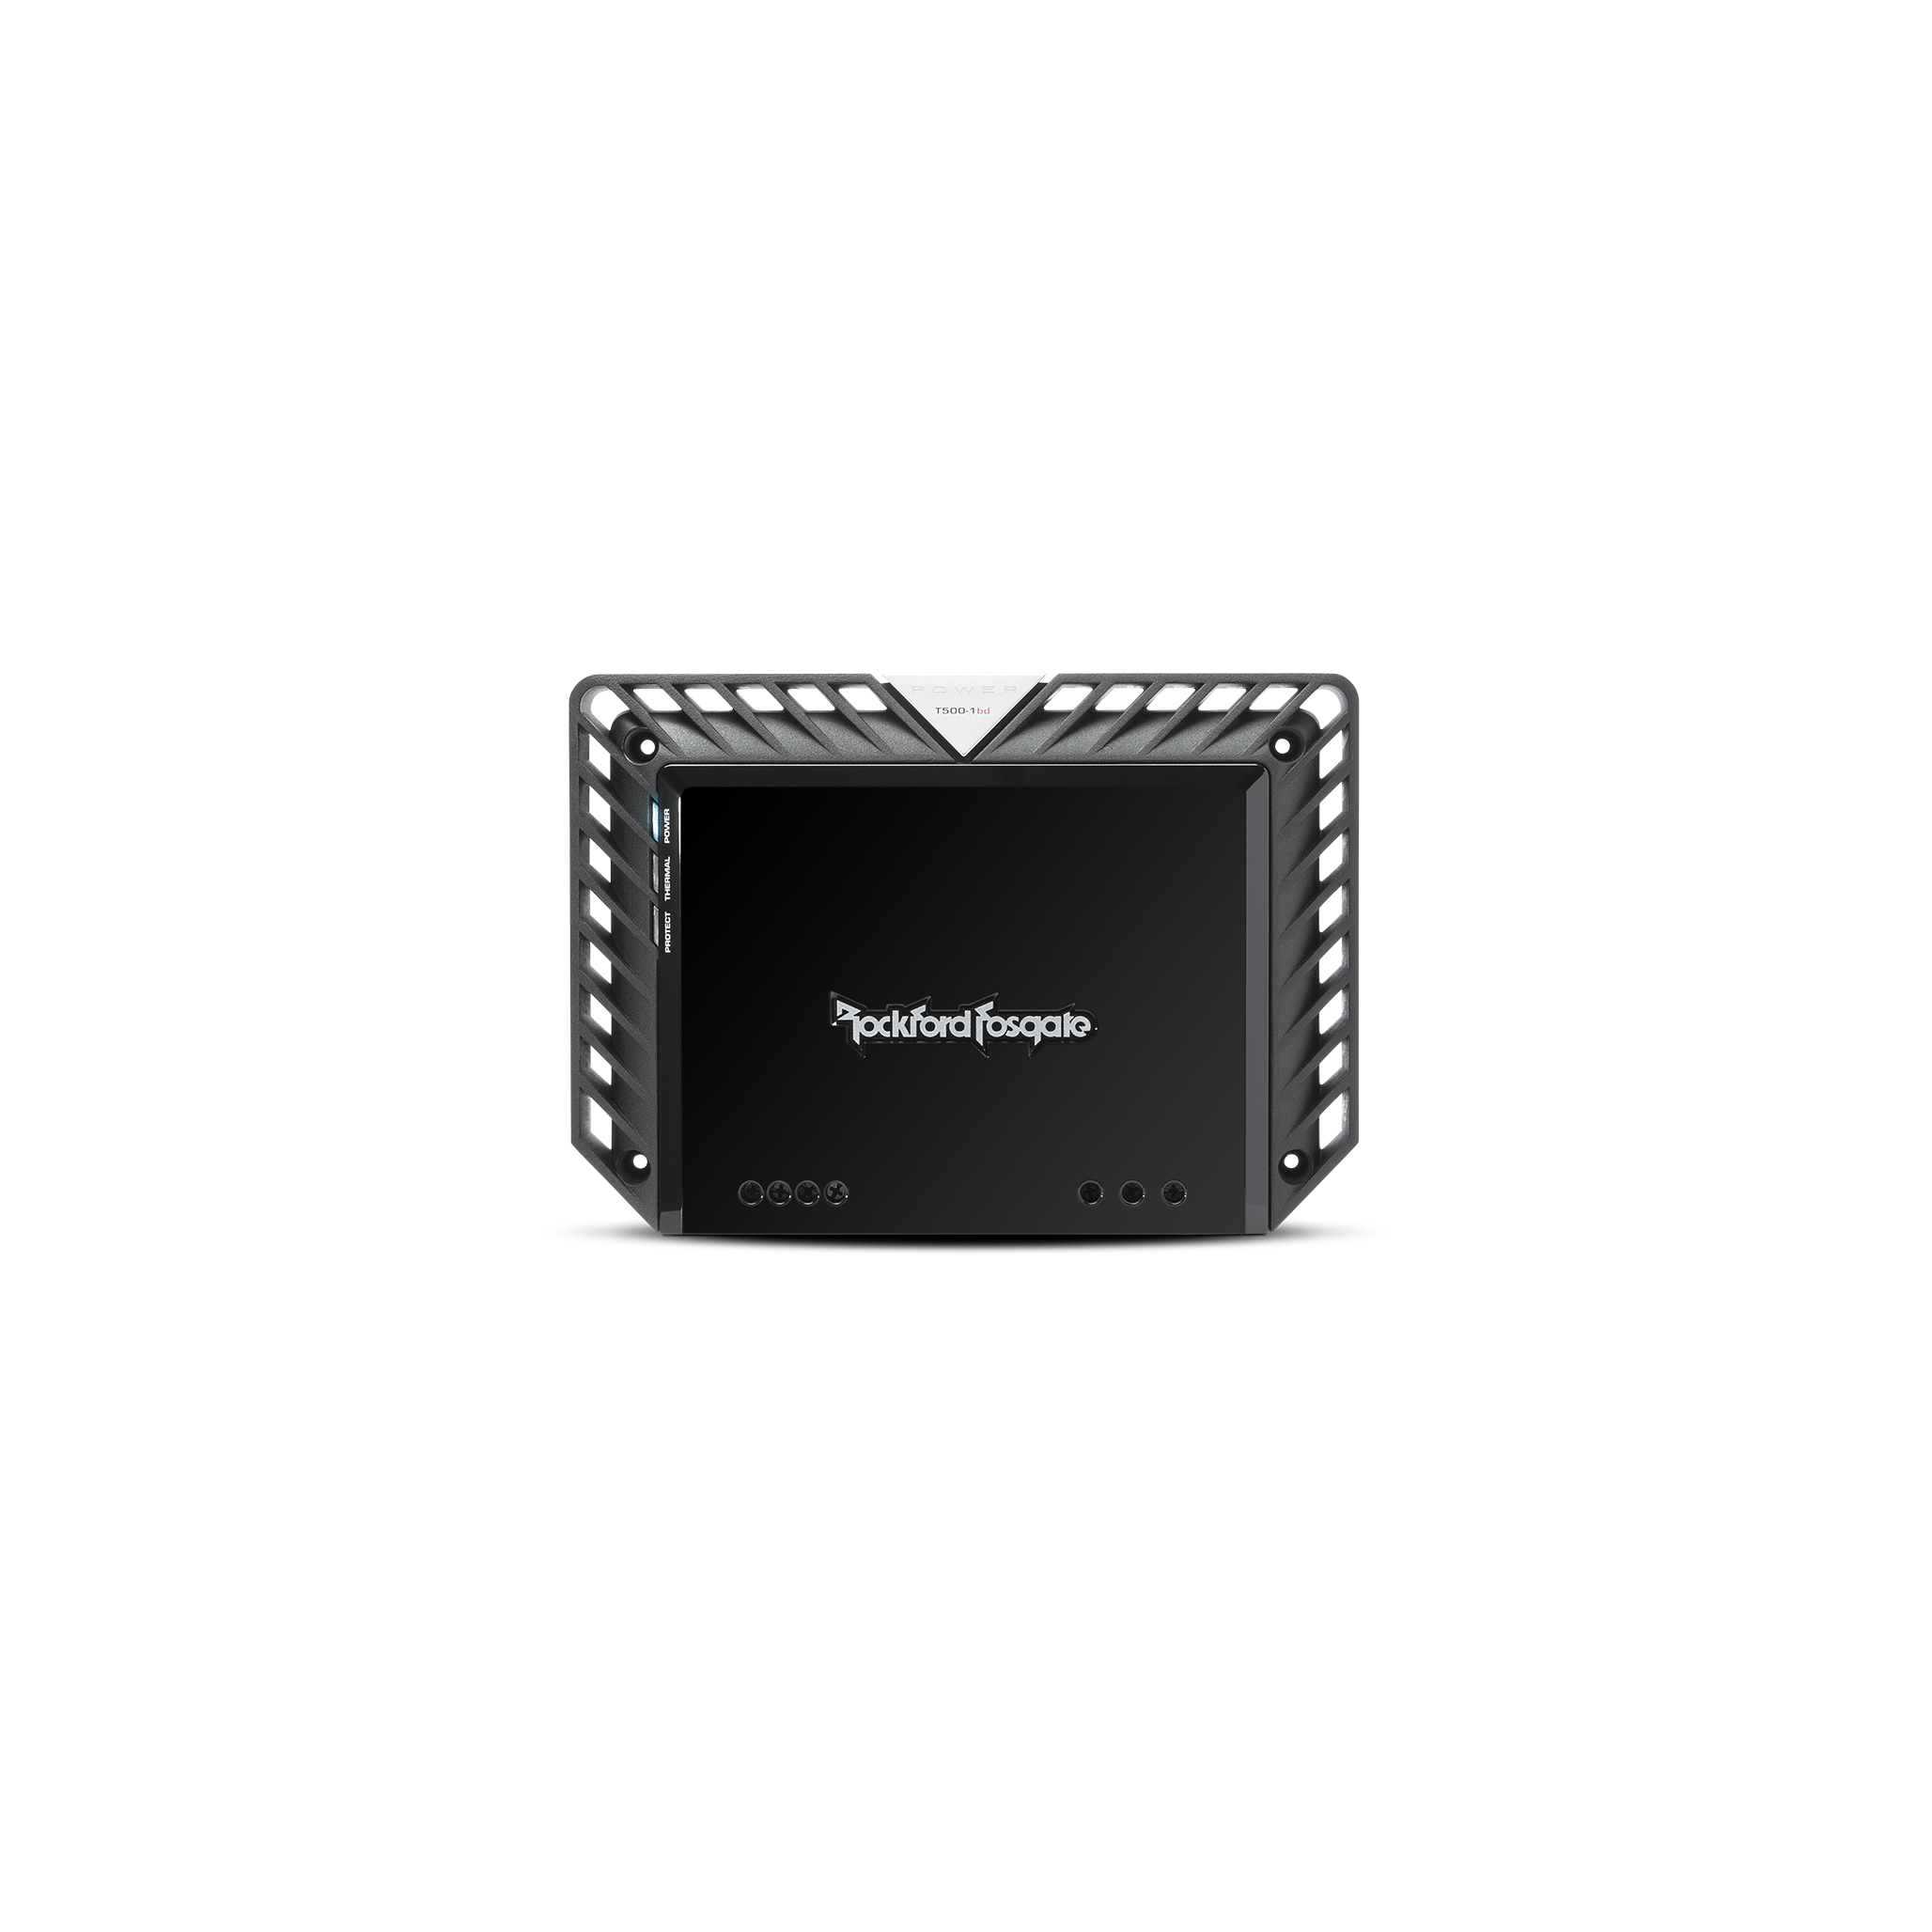 T500-1bd 500 Watt Class-bd Mono Amplifier | Rockford Fosgate ®